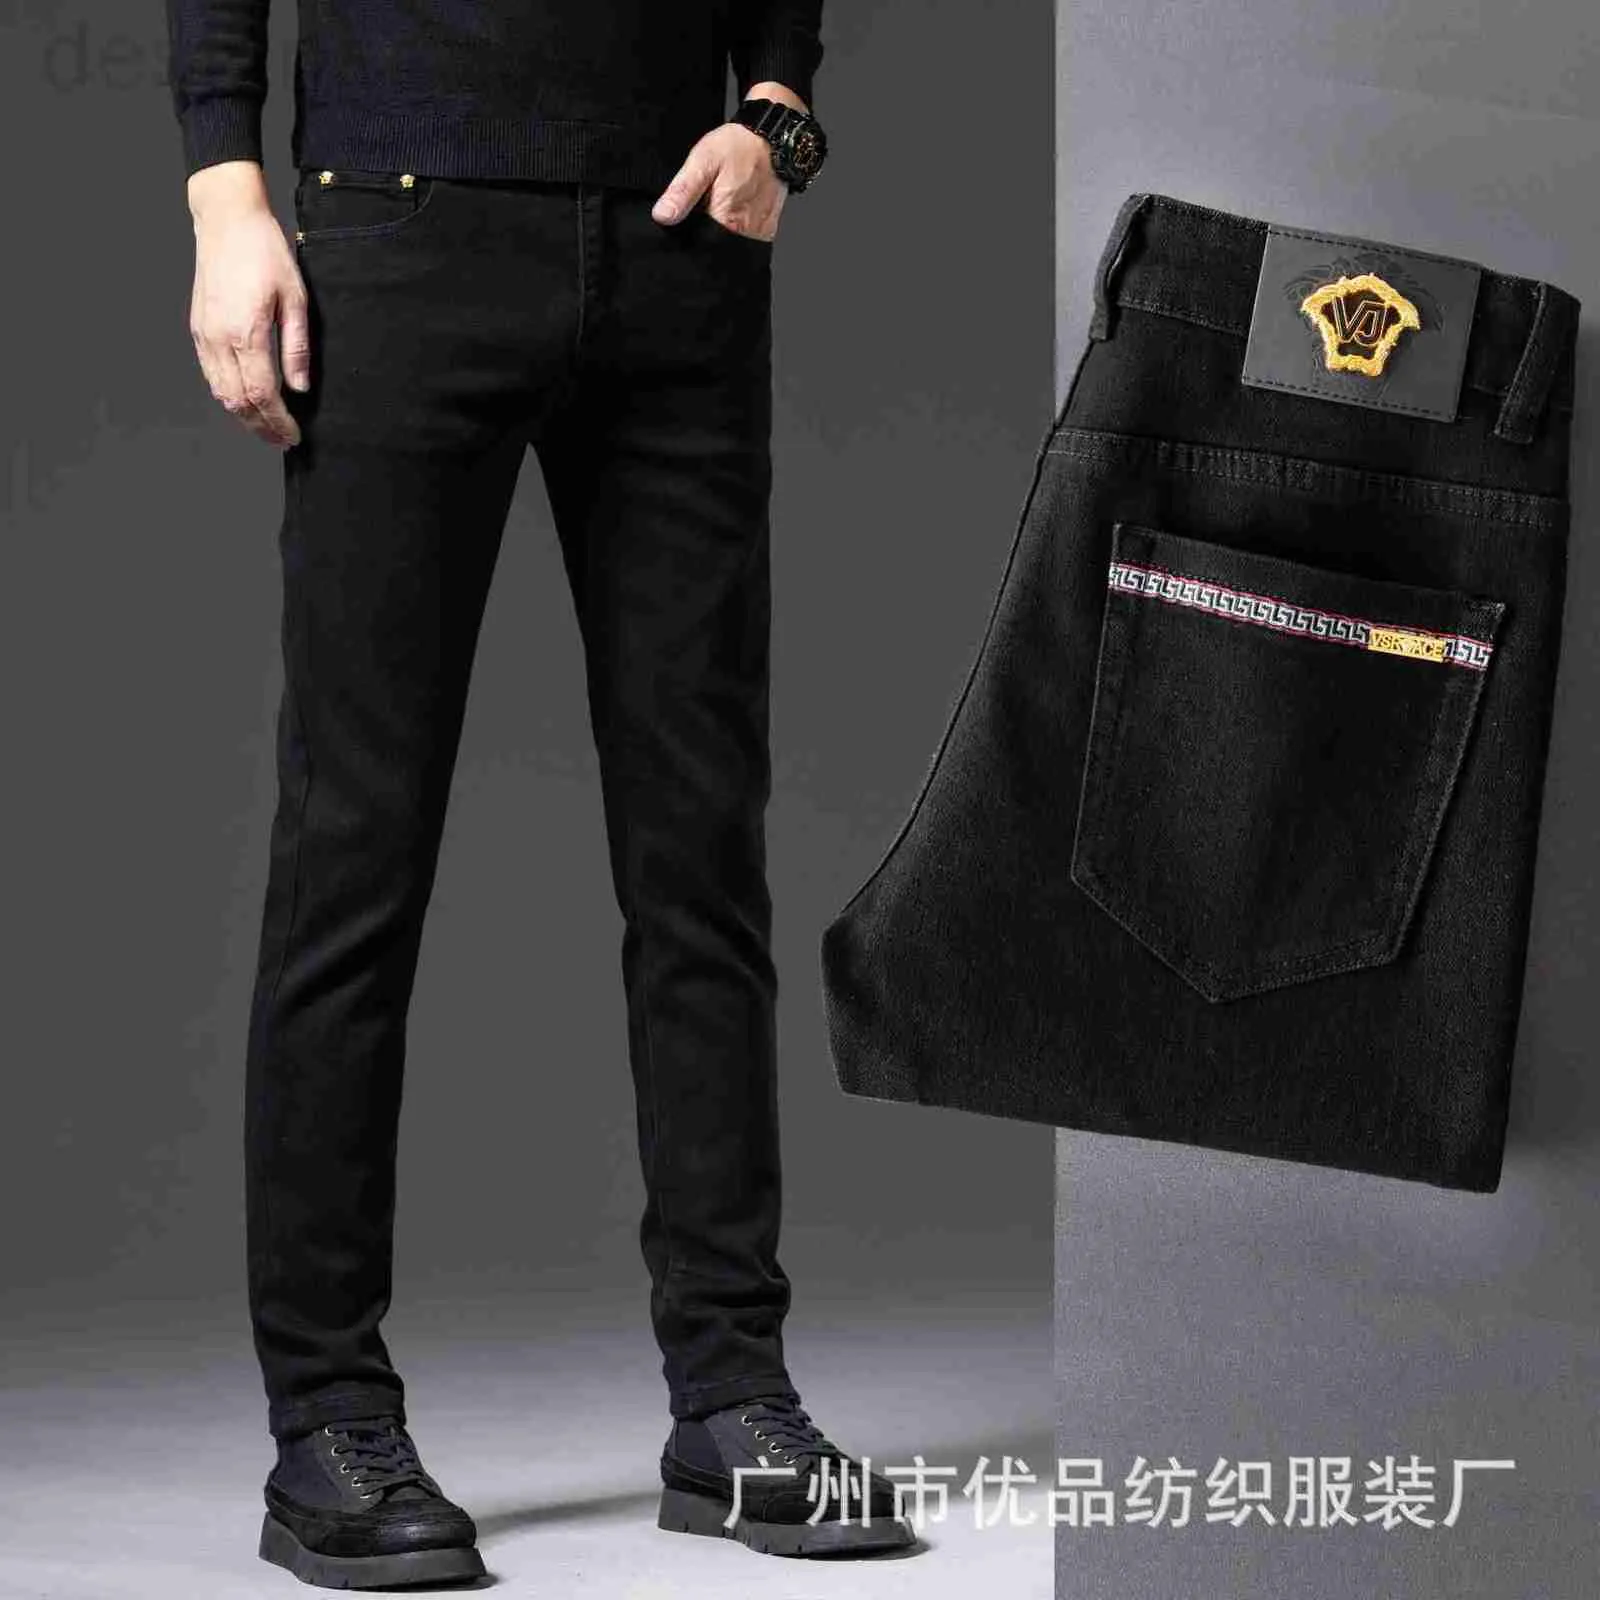 Jeans pour hommes Designer Chao Marque Haut de gamme Hommes Noir Slim Slim Fit Mode Coréenne Automne et hiver Pantalon G6AH